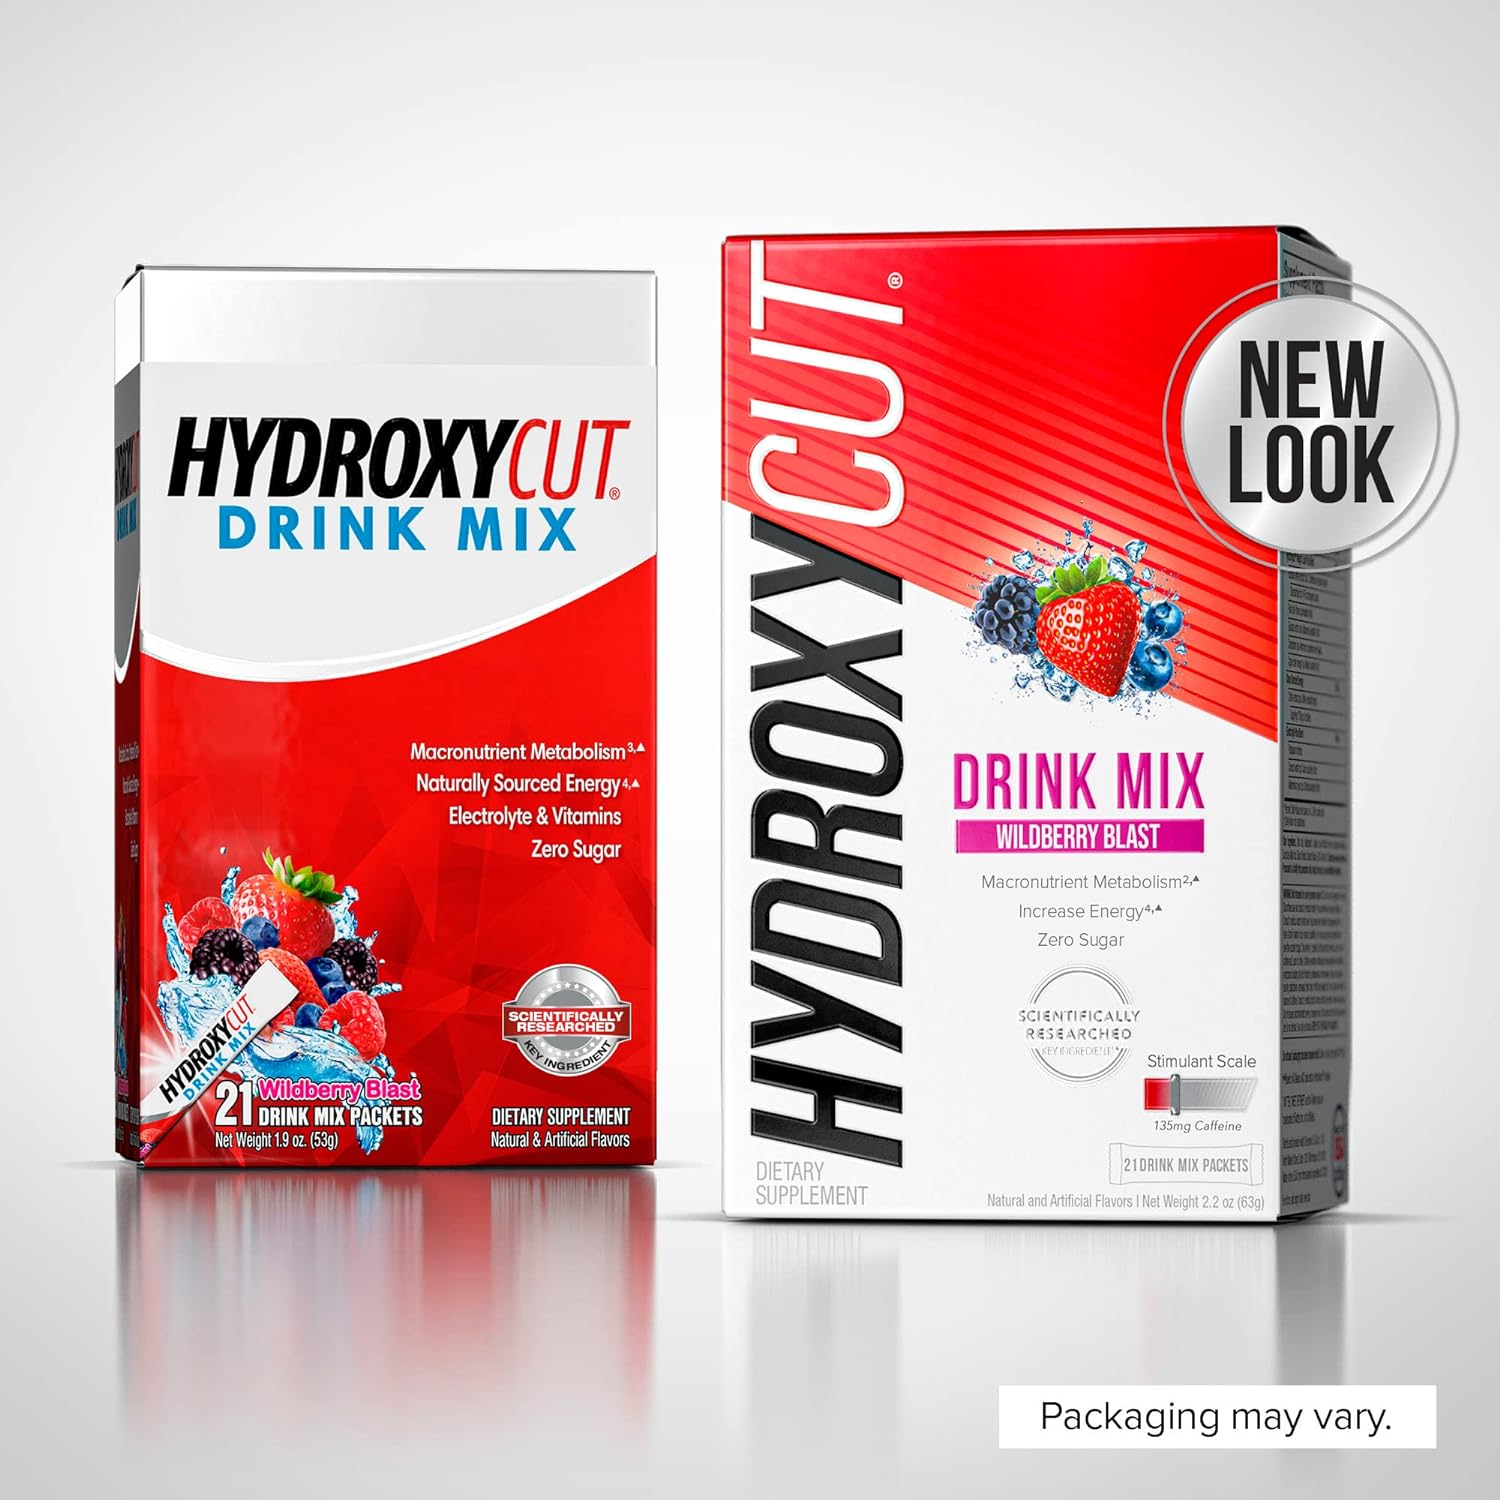 Hydroxycut Drink Mix Weight Loss for Women & Men Weight Loss Supplemen